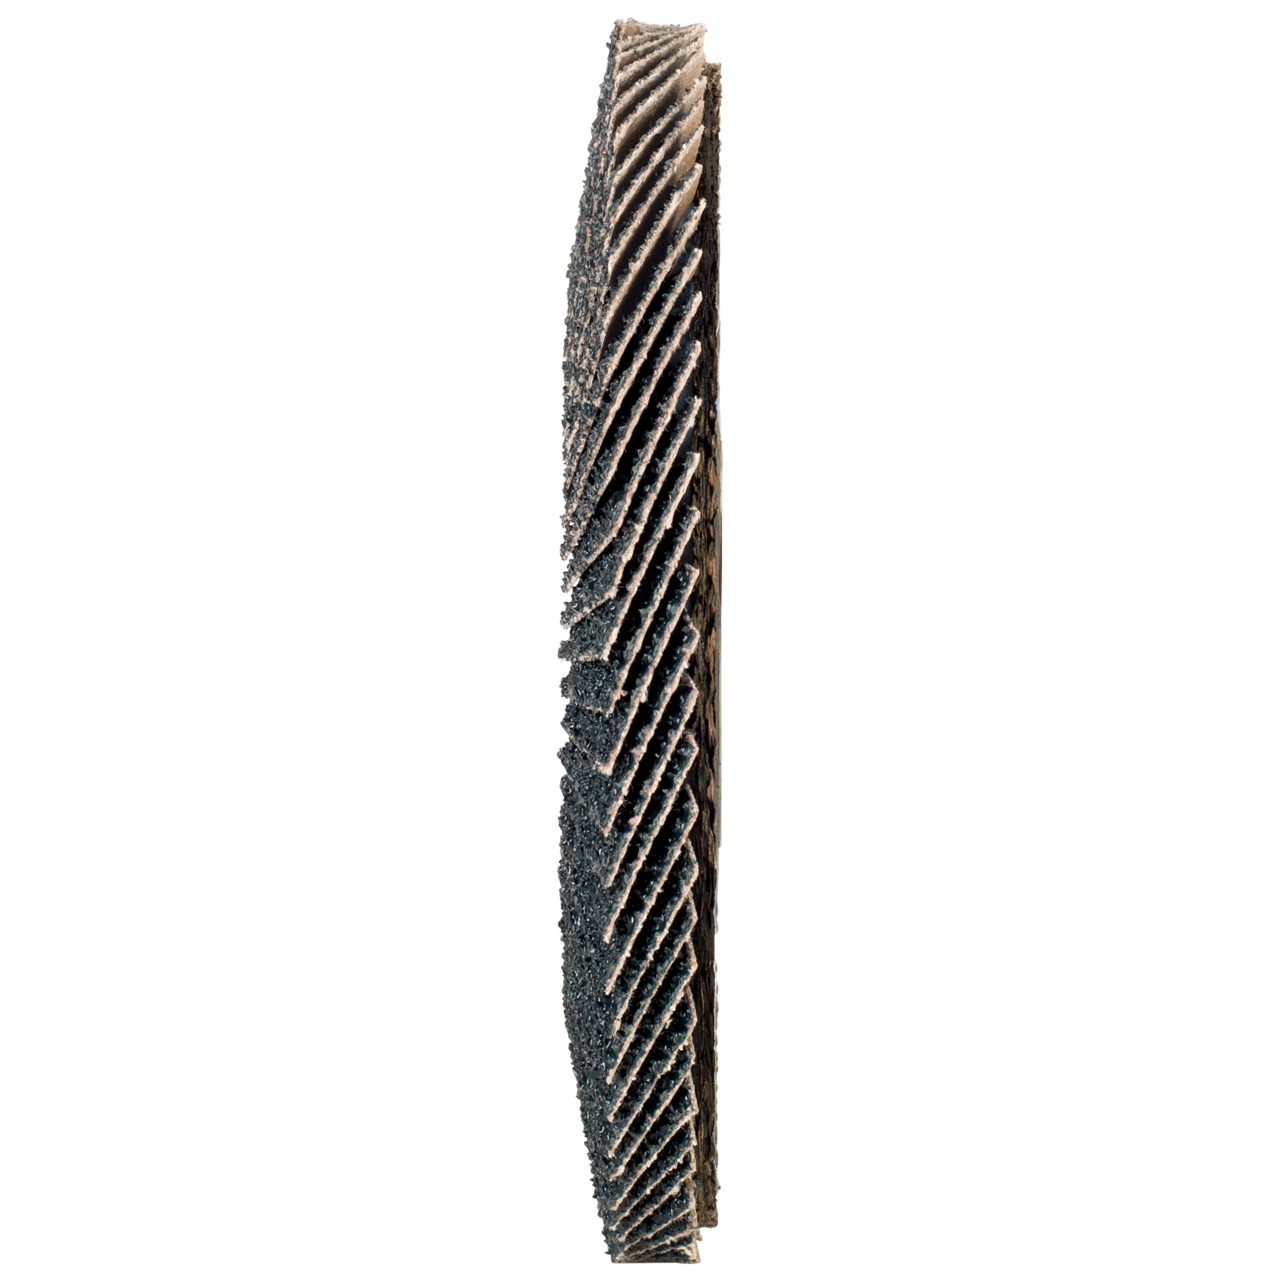 Tyrolit Arandela dentada DxH 178x22,2 2en1 para acero y acero inoxidable, P60, forma: 28A - versión recta (versión con cuerpo de soporte de fibra de vidrio), Art. 668697